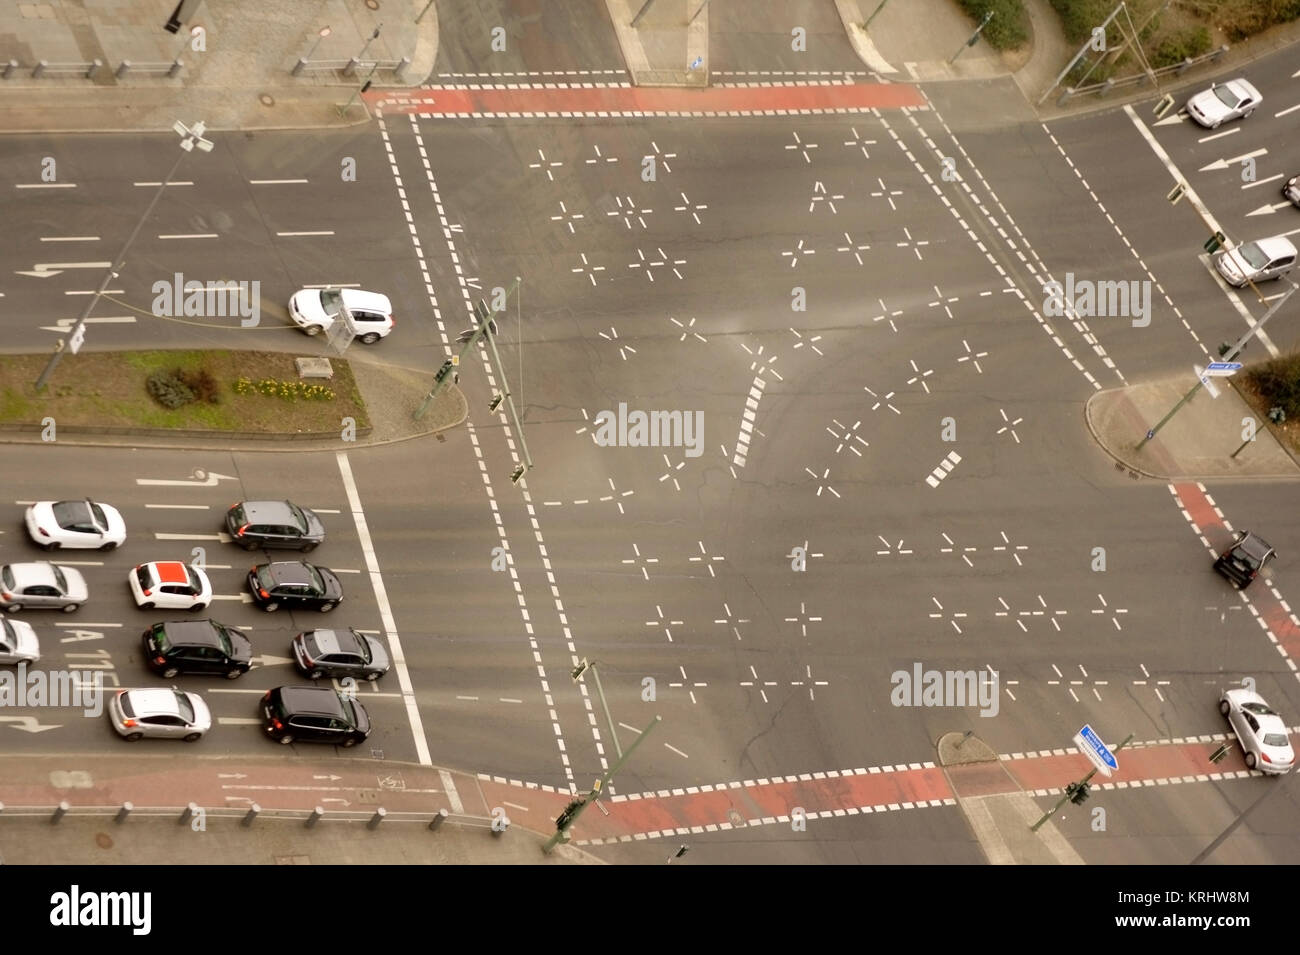 Die Draufsicht und Luftaufnahme einer mehrspurigen Straße mit Straßenverkehr. Stock Photo